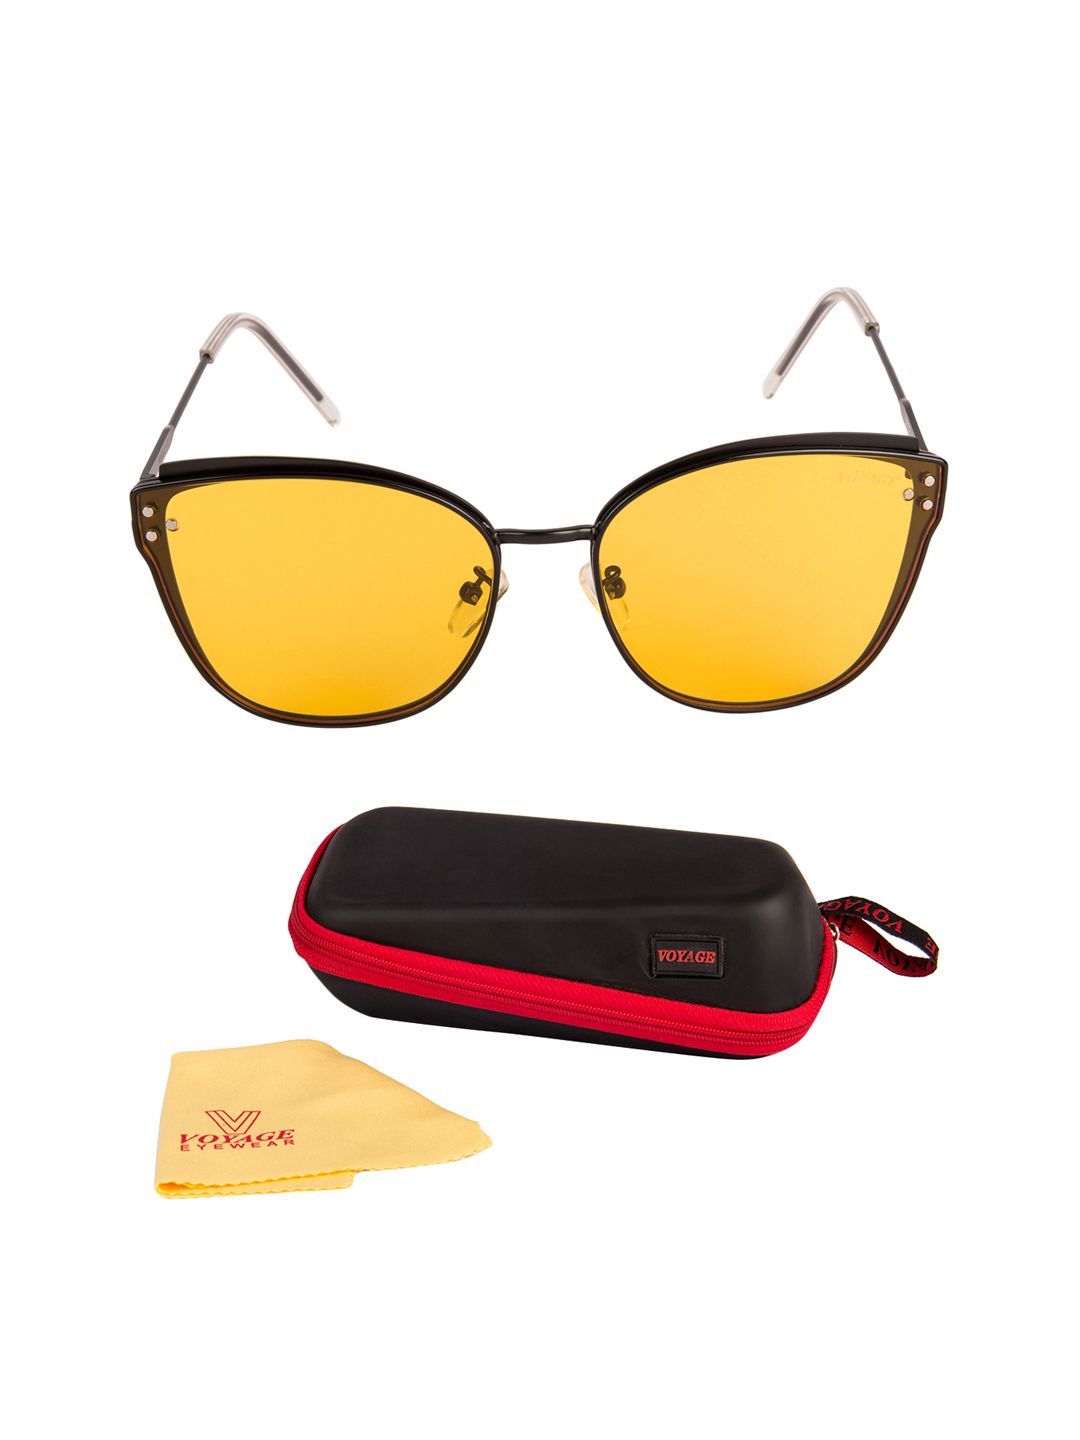 Voyage Women Yellow Cateye Sunglasses 5852MG2856 Price in India